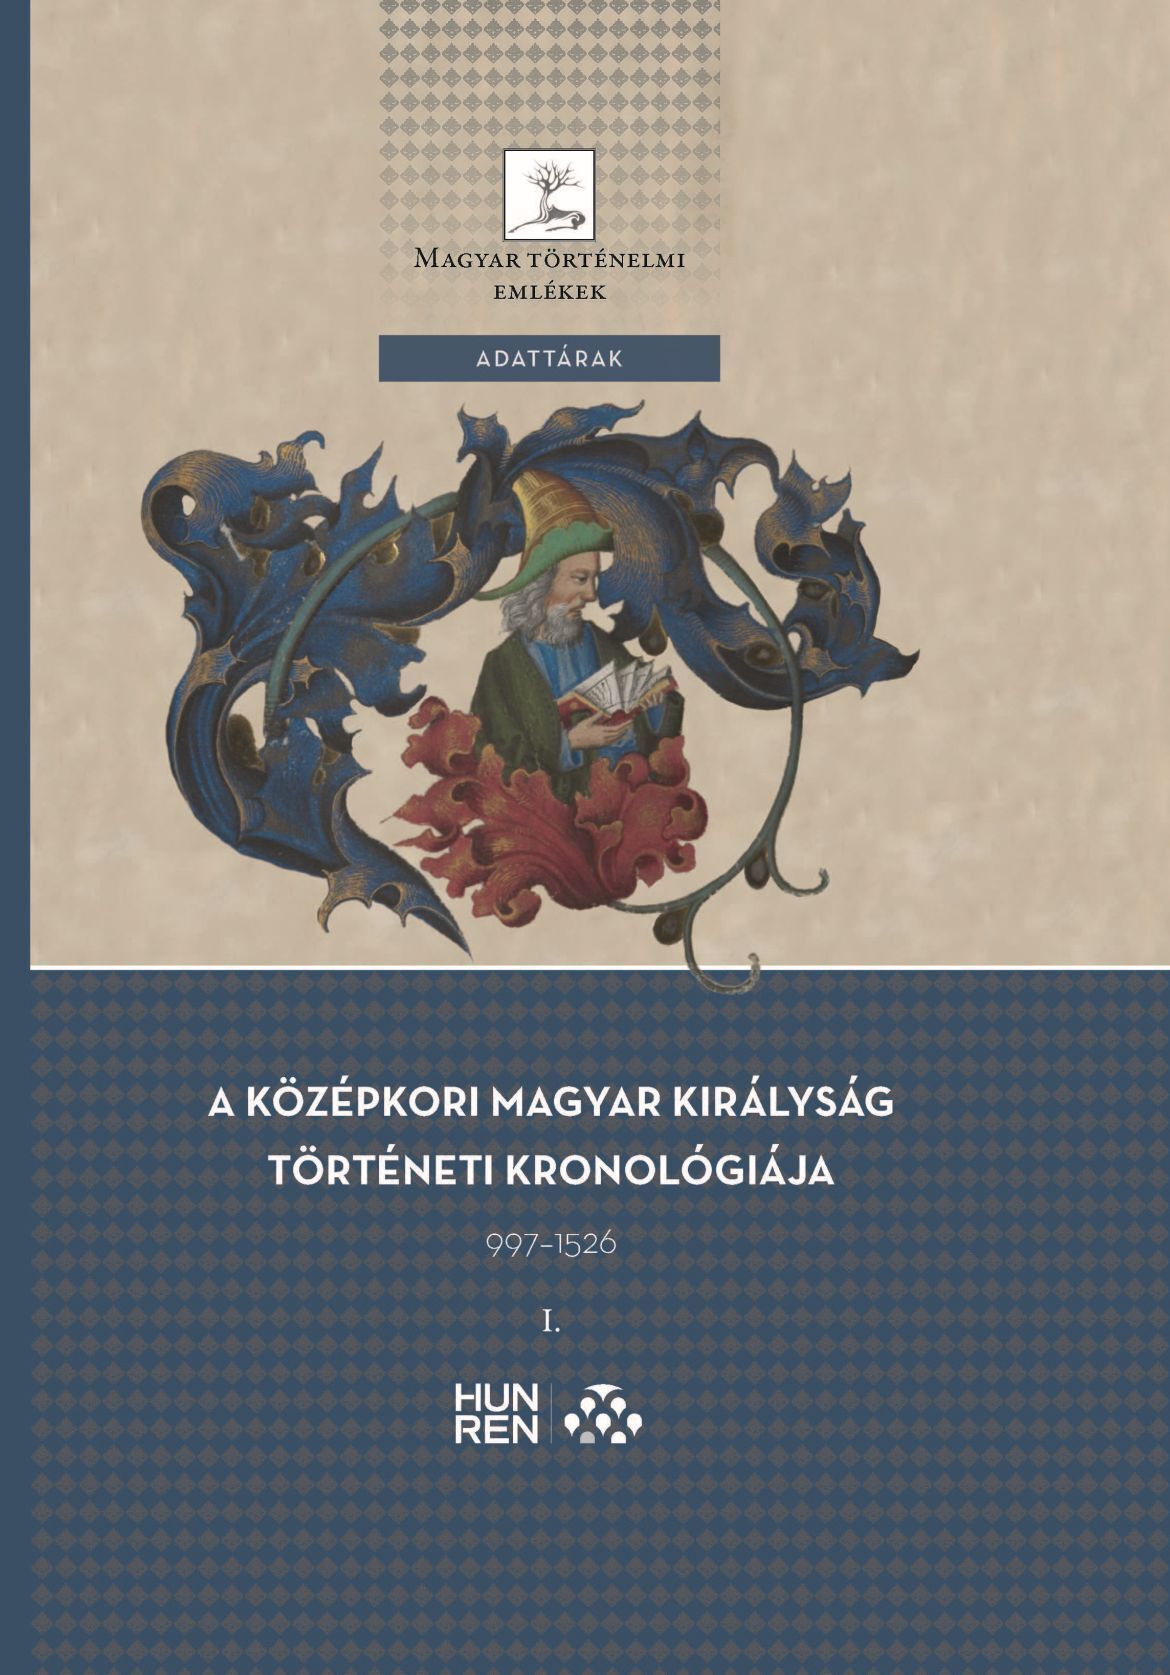 A középkori Magyar Királyság történeti kronológiája, 997–1526 című kötetb